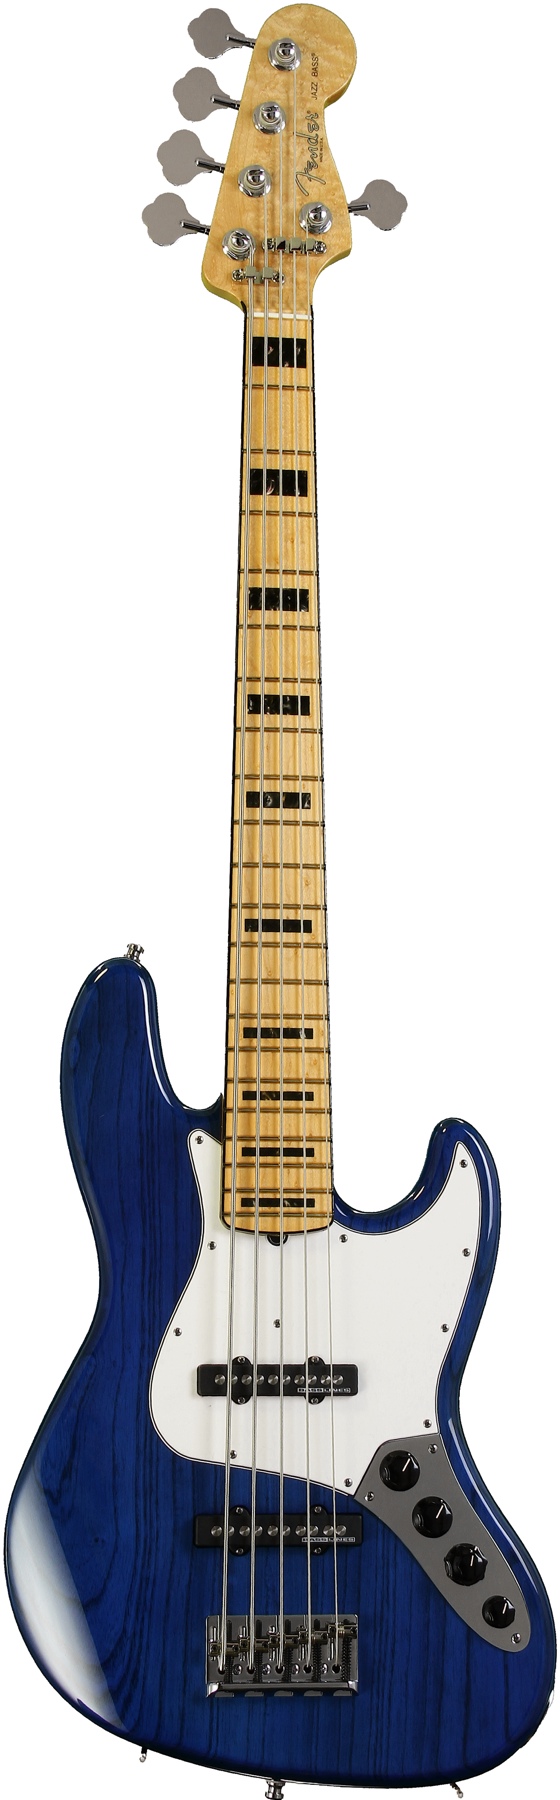 Fender Jaguar Bass Cobalt Blue